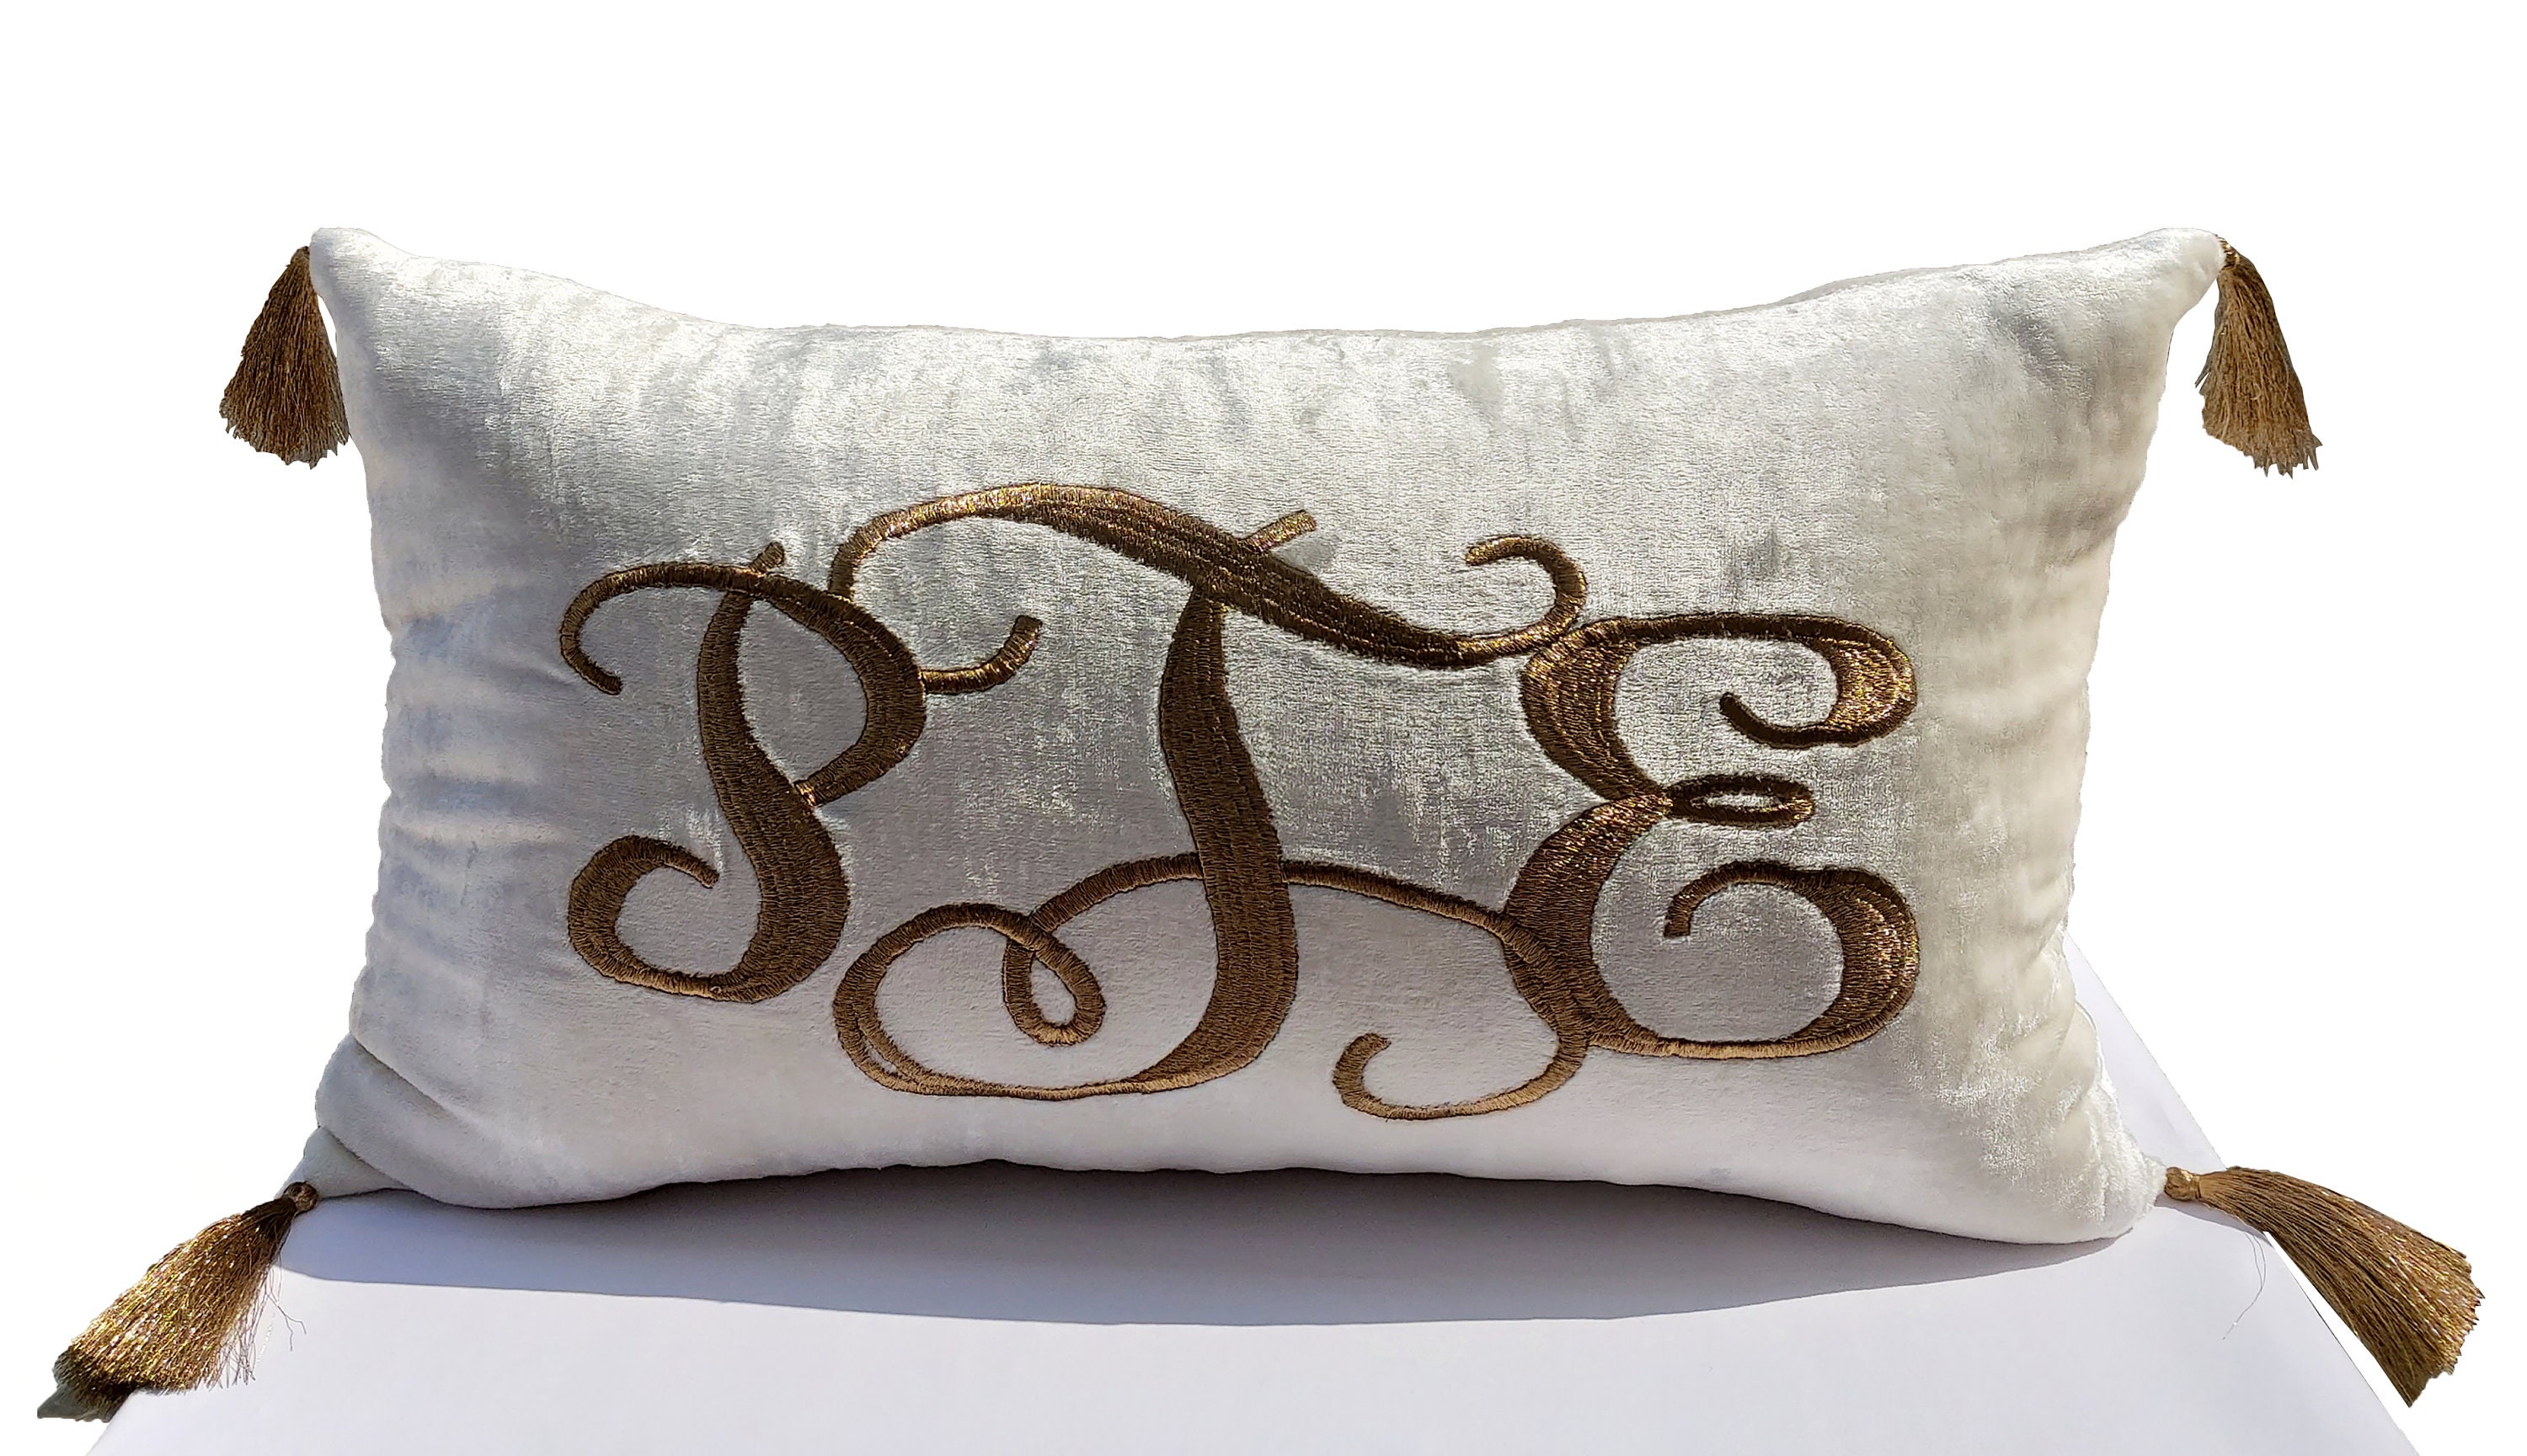 Monogram Gray Velvet Pillow Cover, Monogram Pillow With Tassels